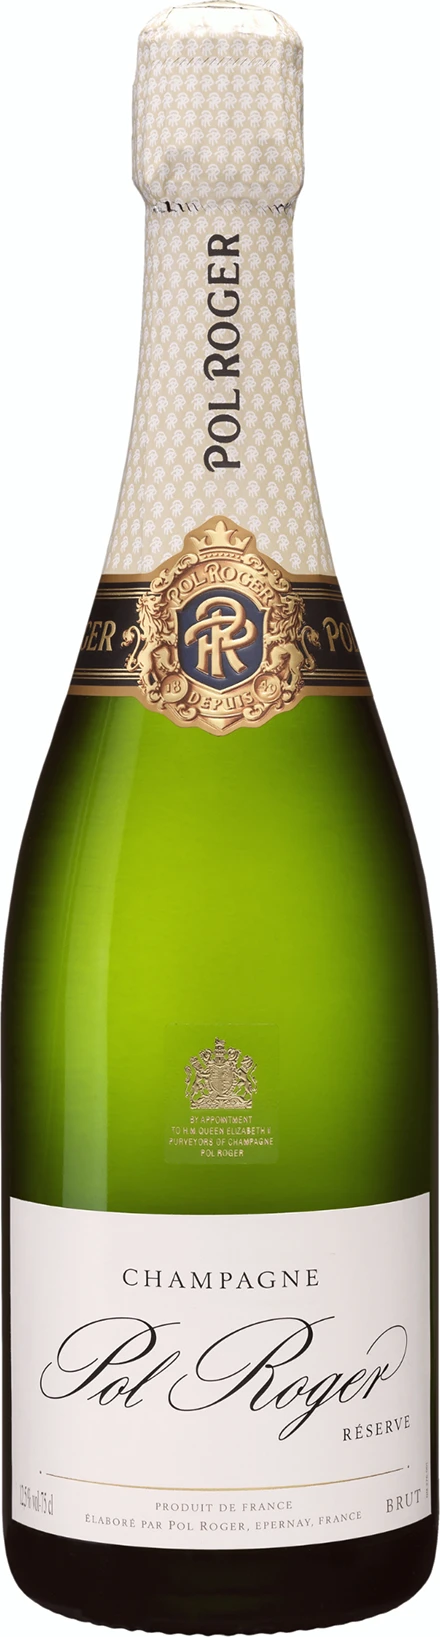 Champagne Pol Roger, Brut Réserve Salmanazar